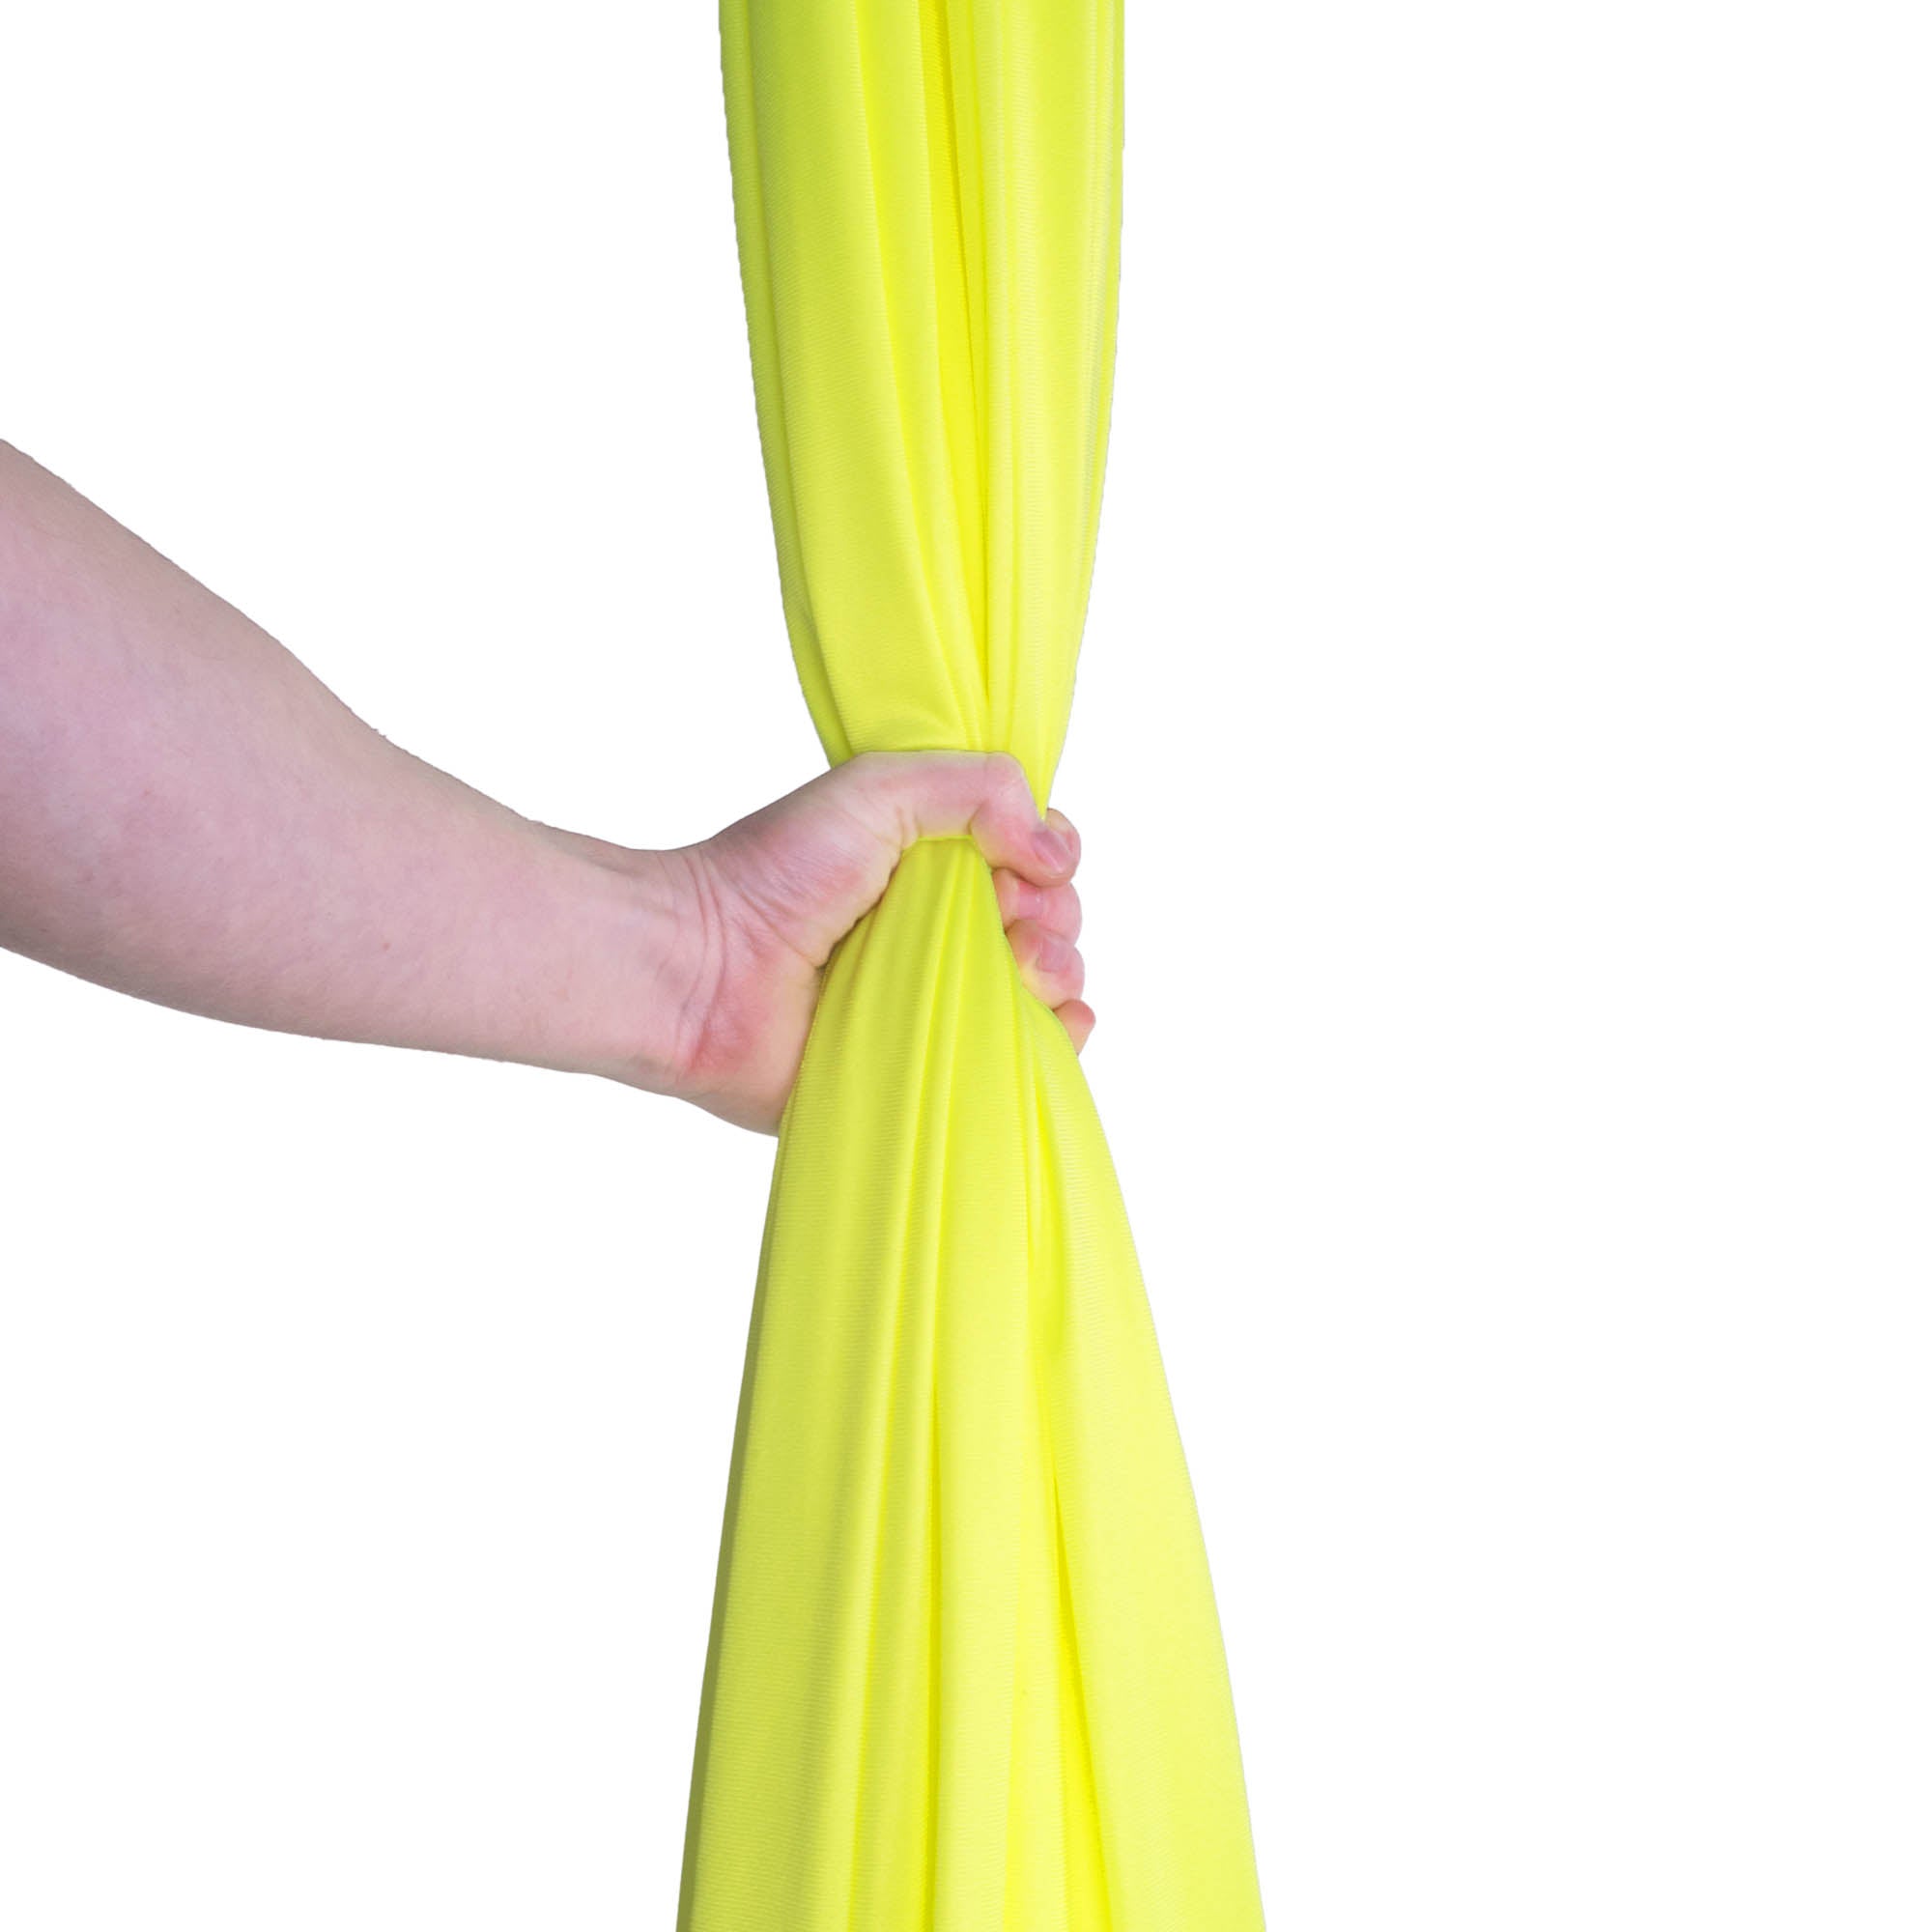 Neon yellow silk in hand